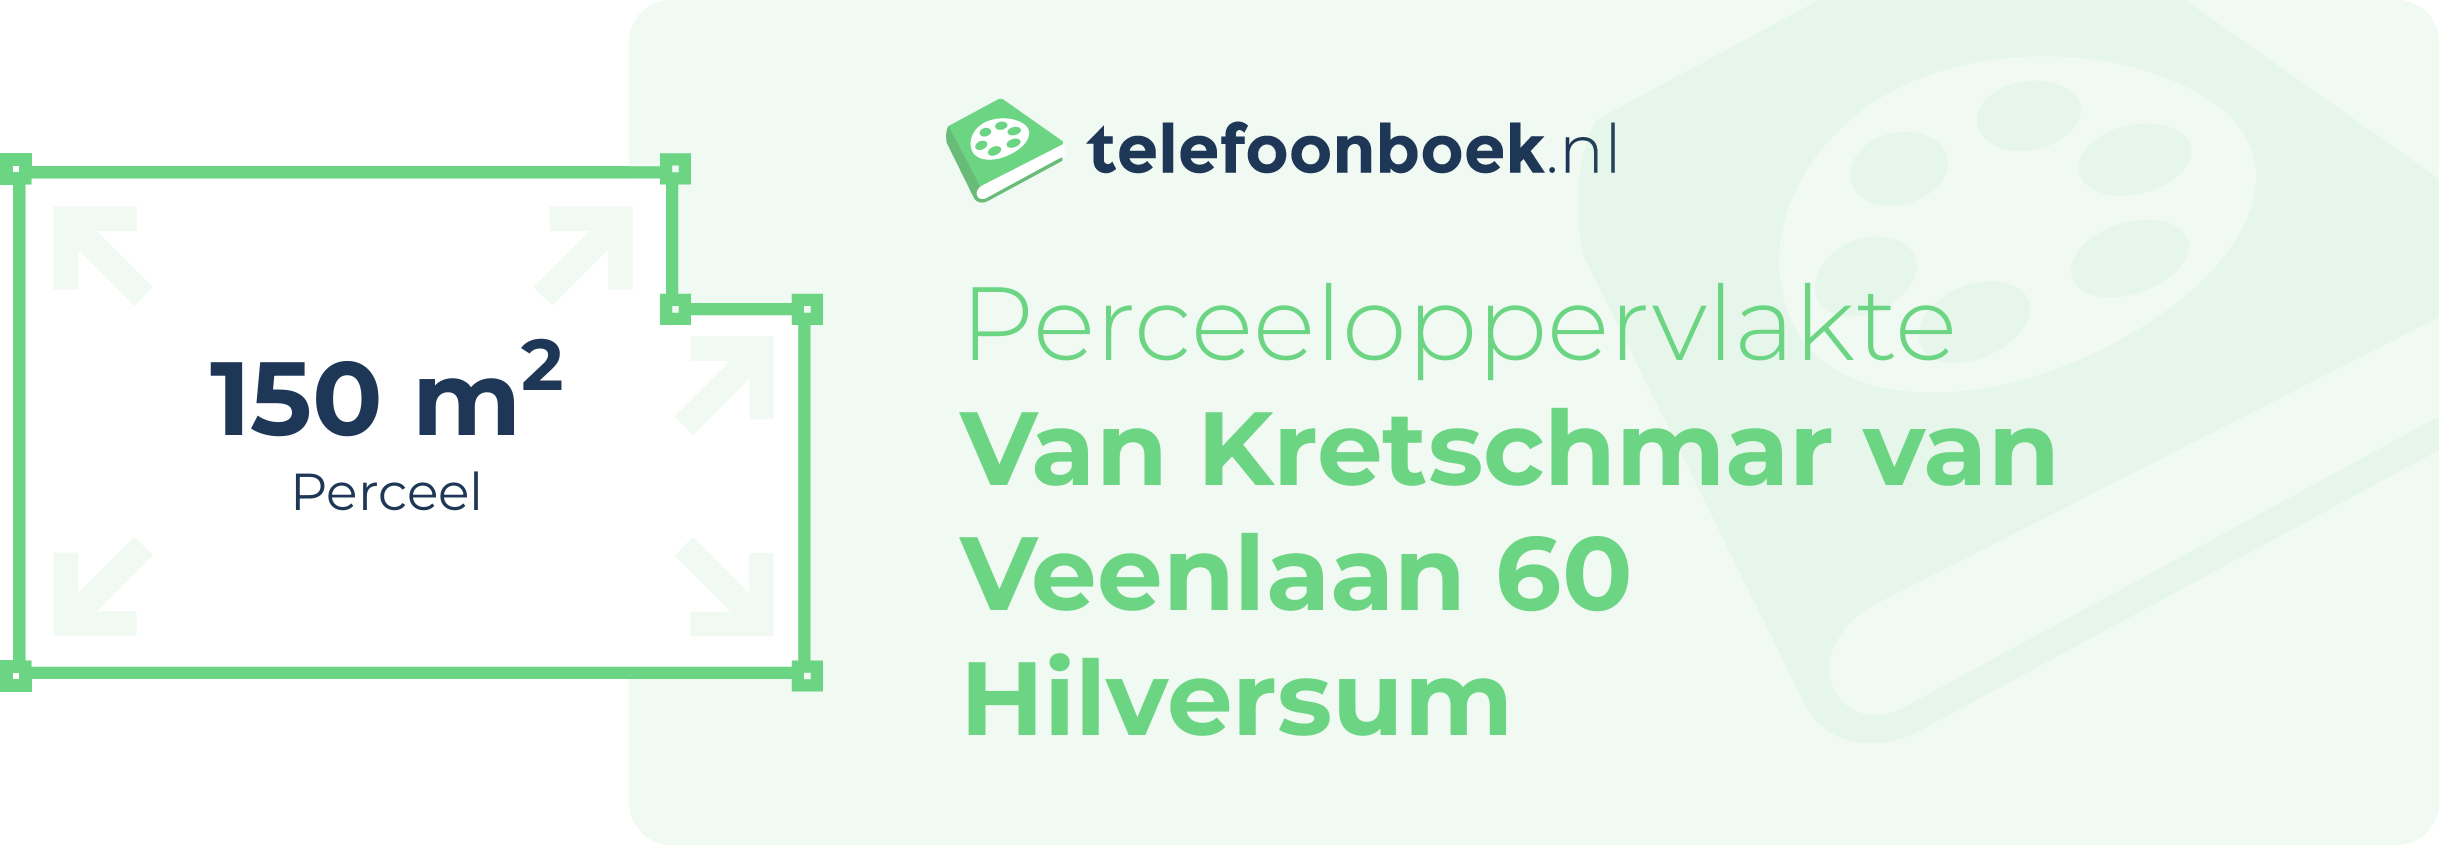 Perceeloppervlakte Van Kretschmar Van Veenlaan 60 Hilversum